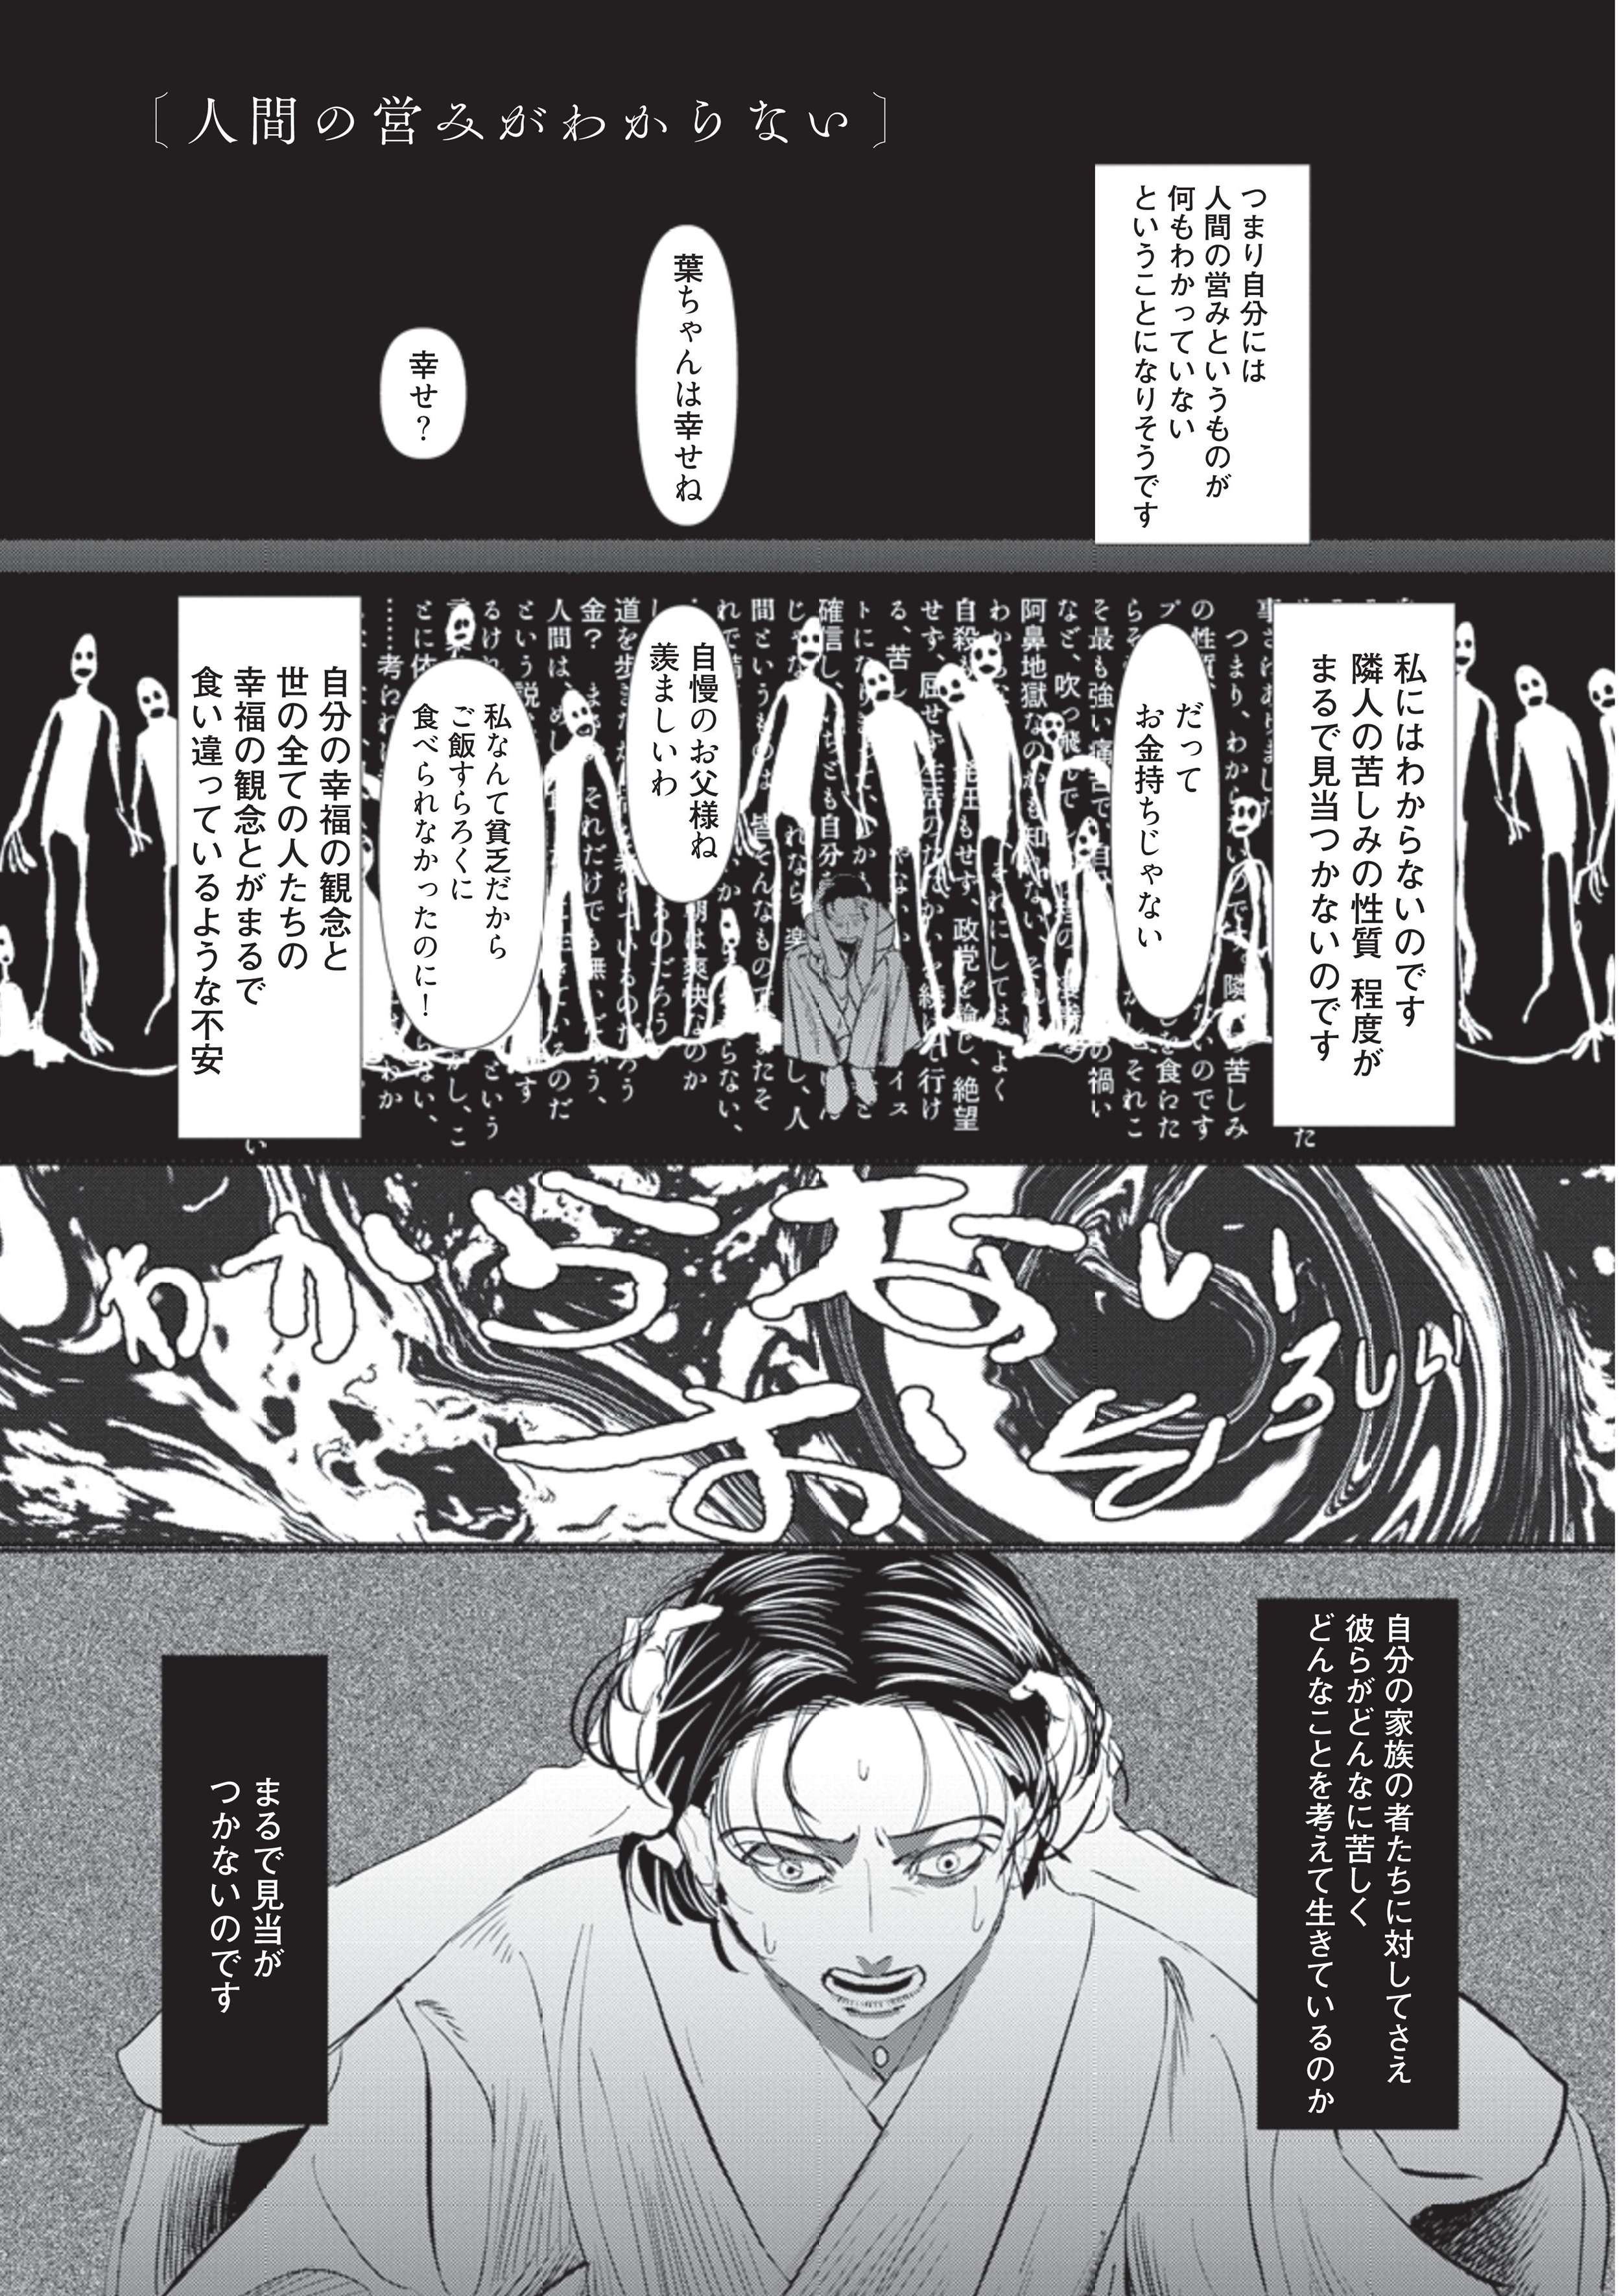 苦悩する少年は、暗い本性を隠して家でも学校でもおどけてみせた／漫画 人間失格 manga_ningenshikkaku4-1.jpg